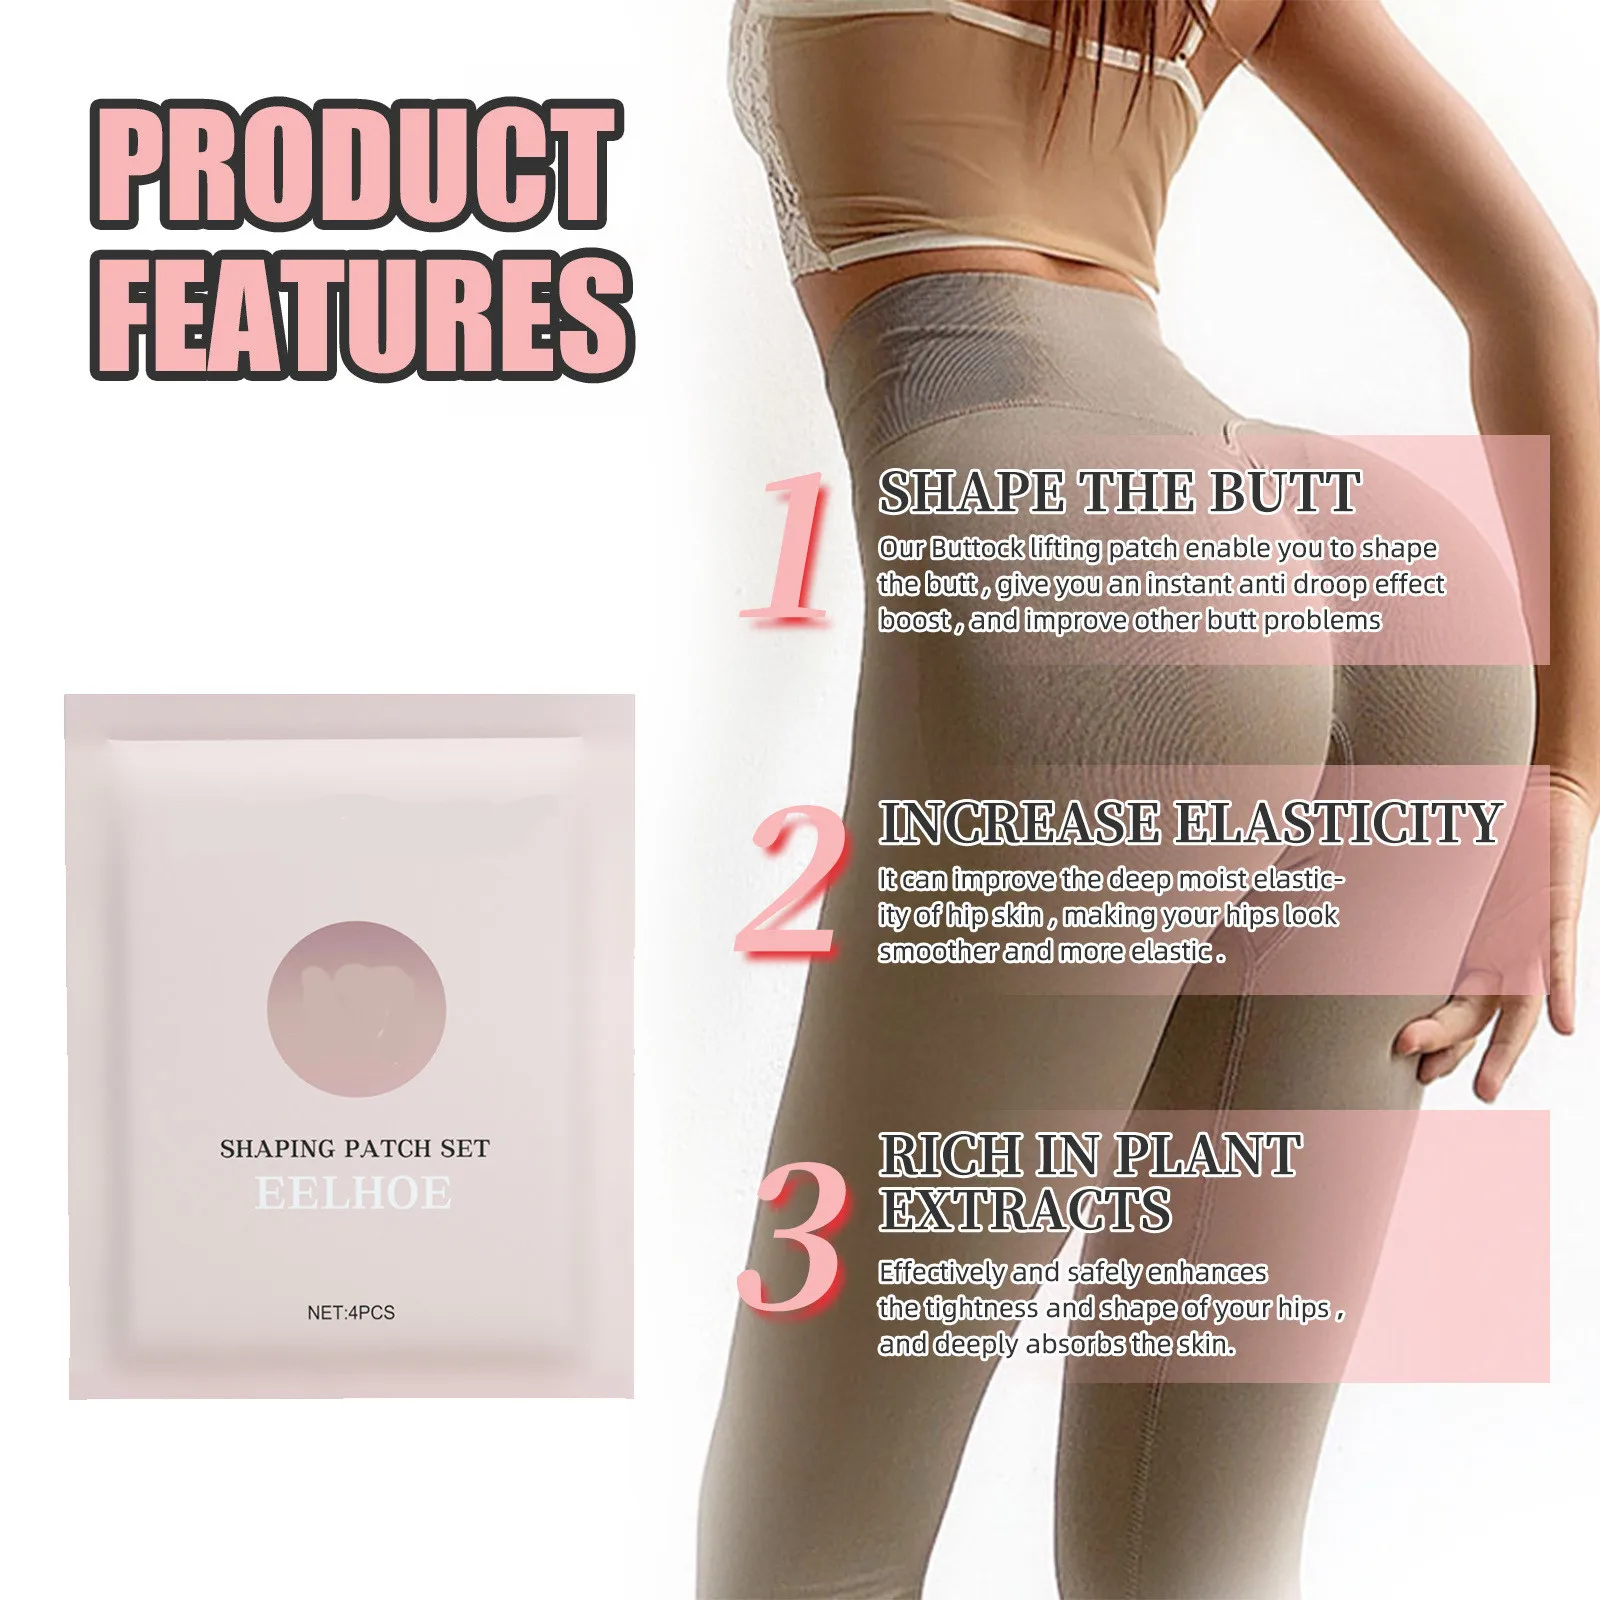 EELHOE Butt-Lift Shaping Patch for Women Hip Butt Enhancement